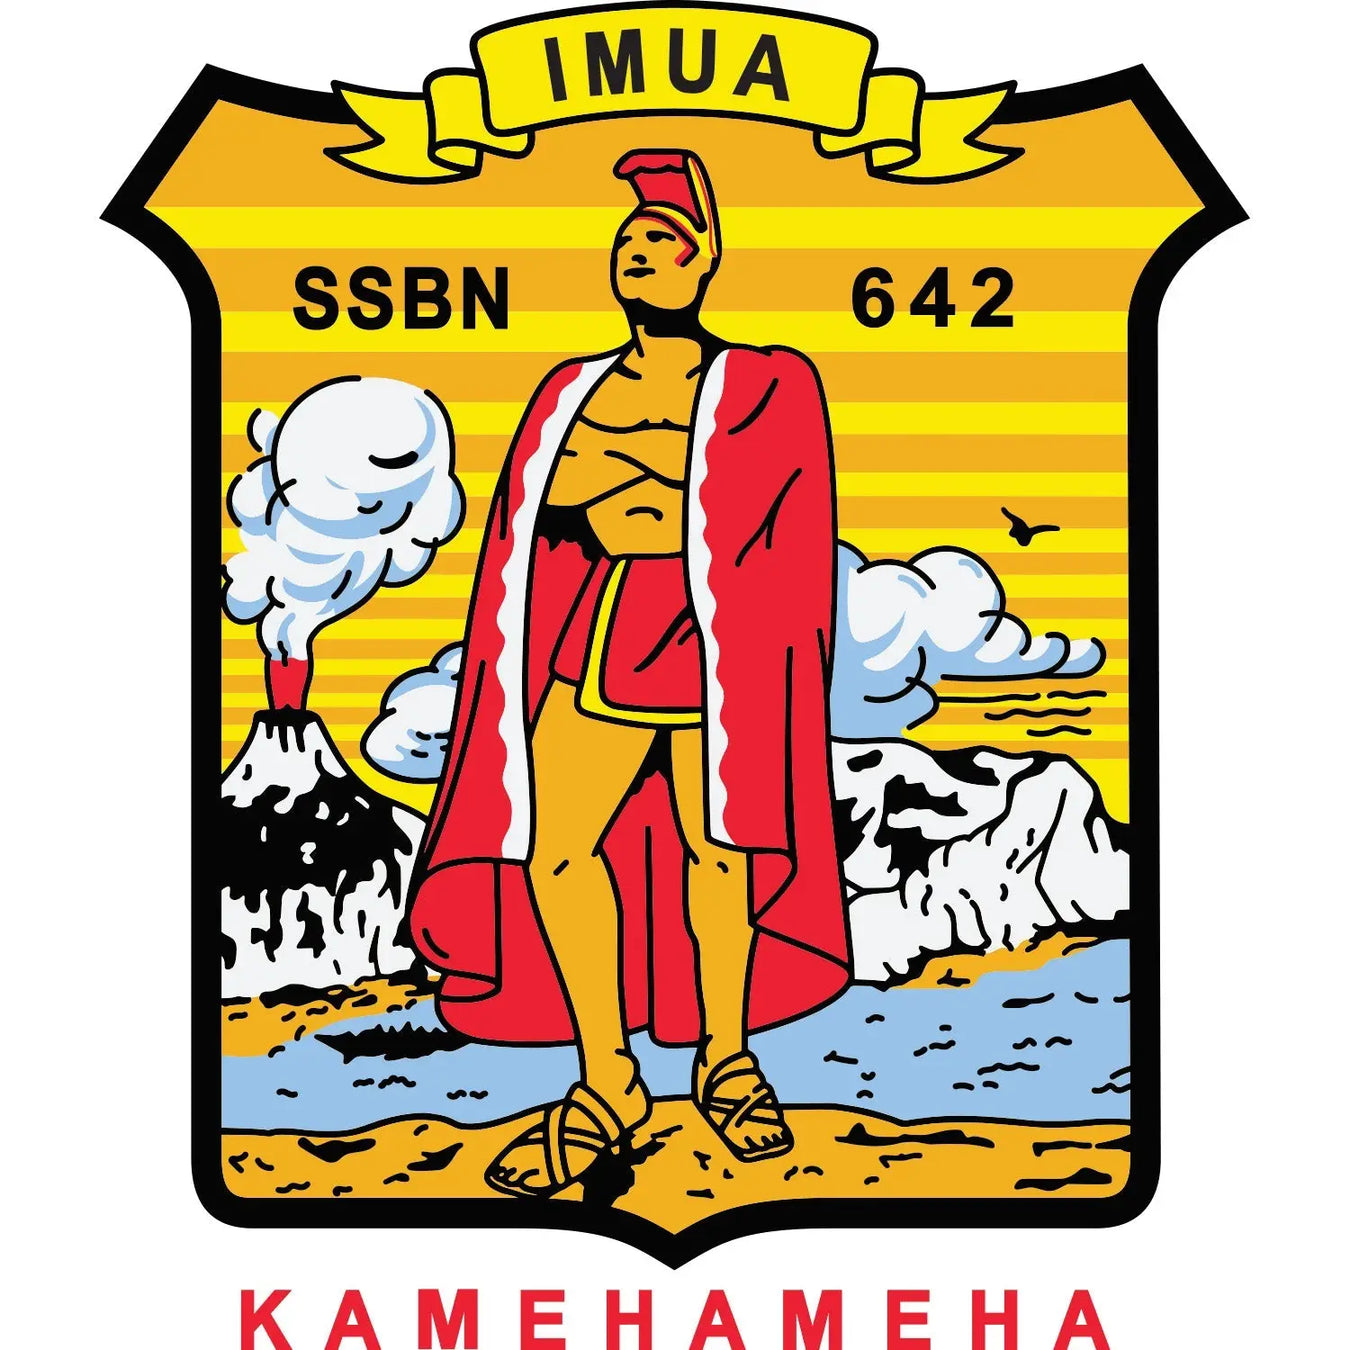 USS Kamehameha (SSBN-642)